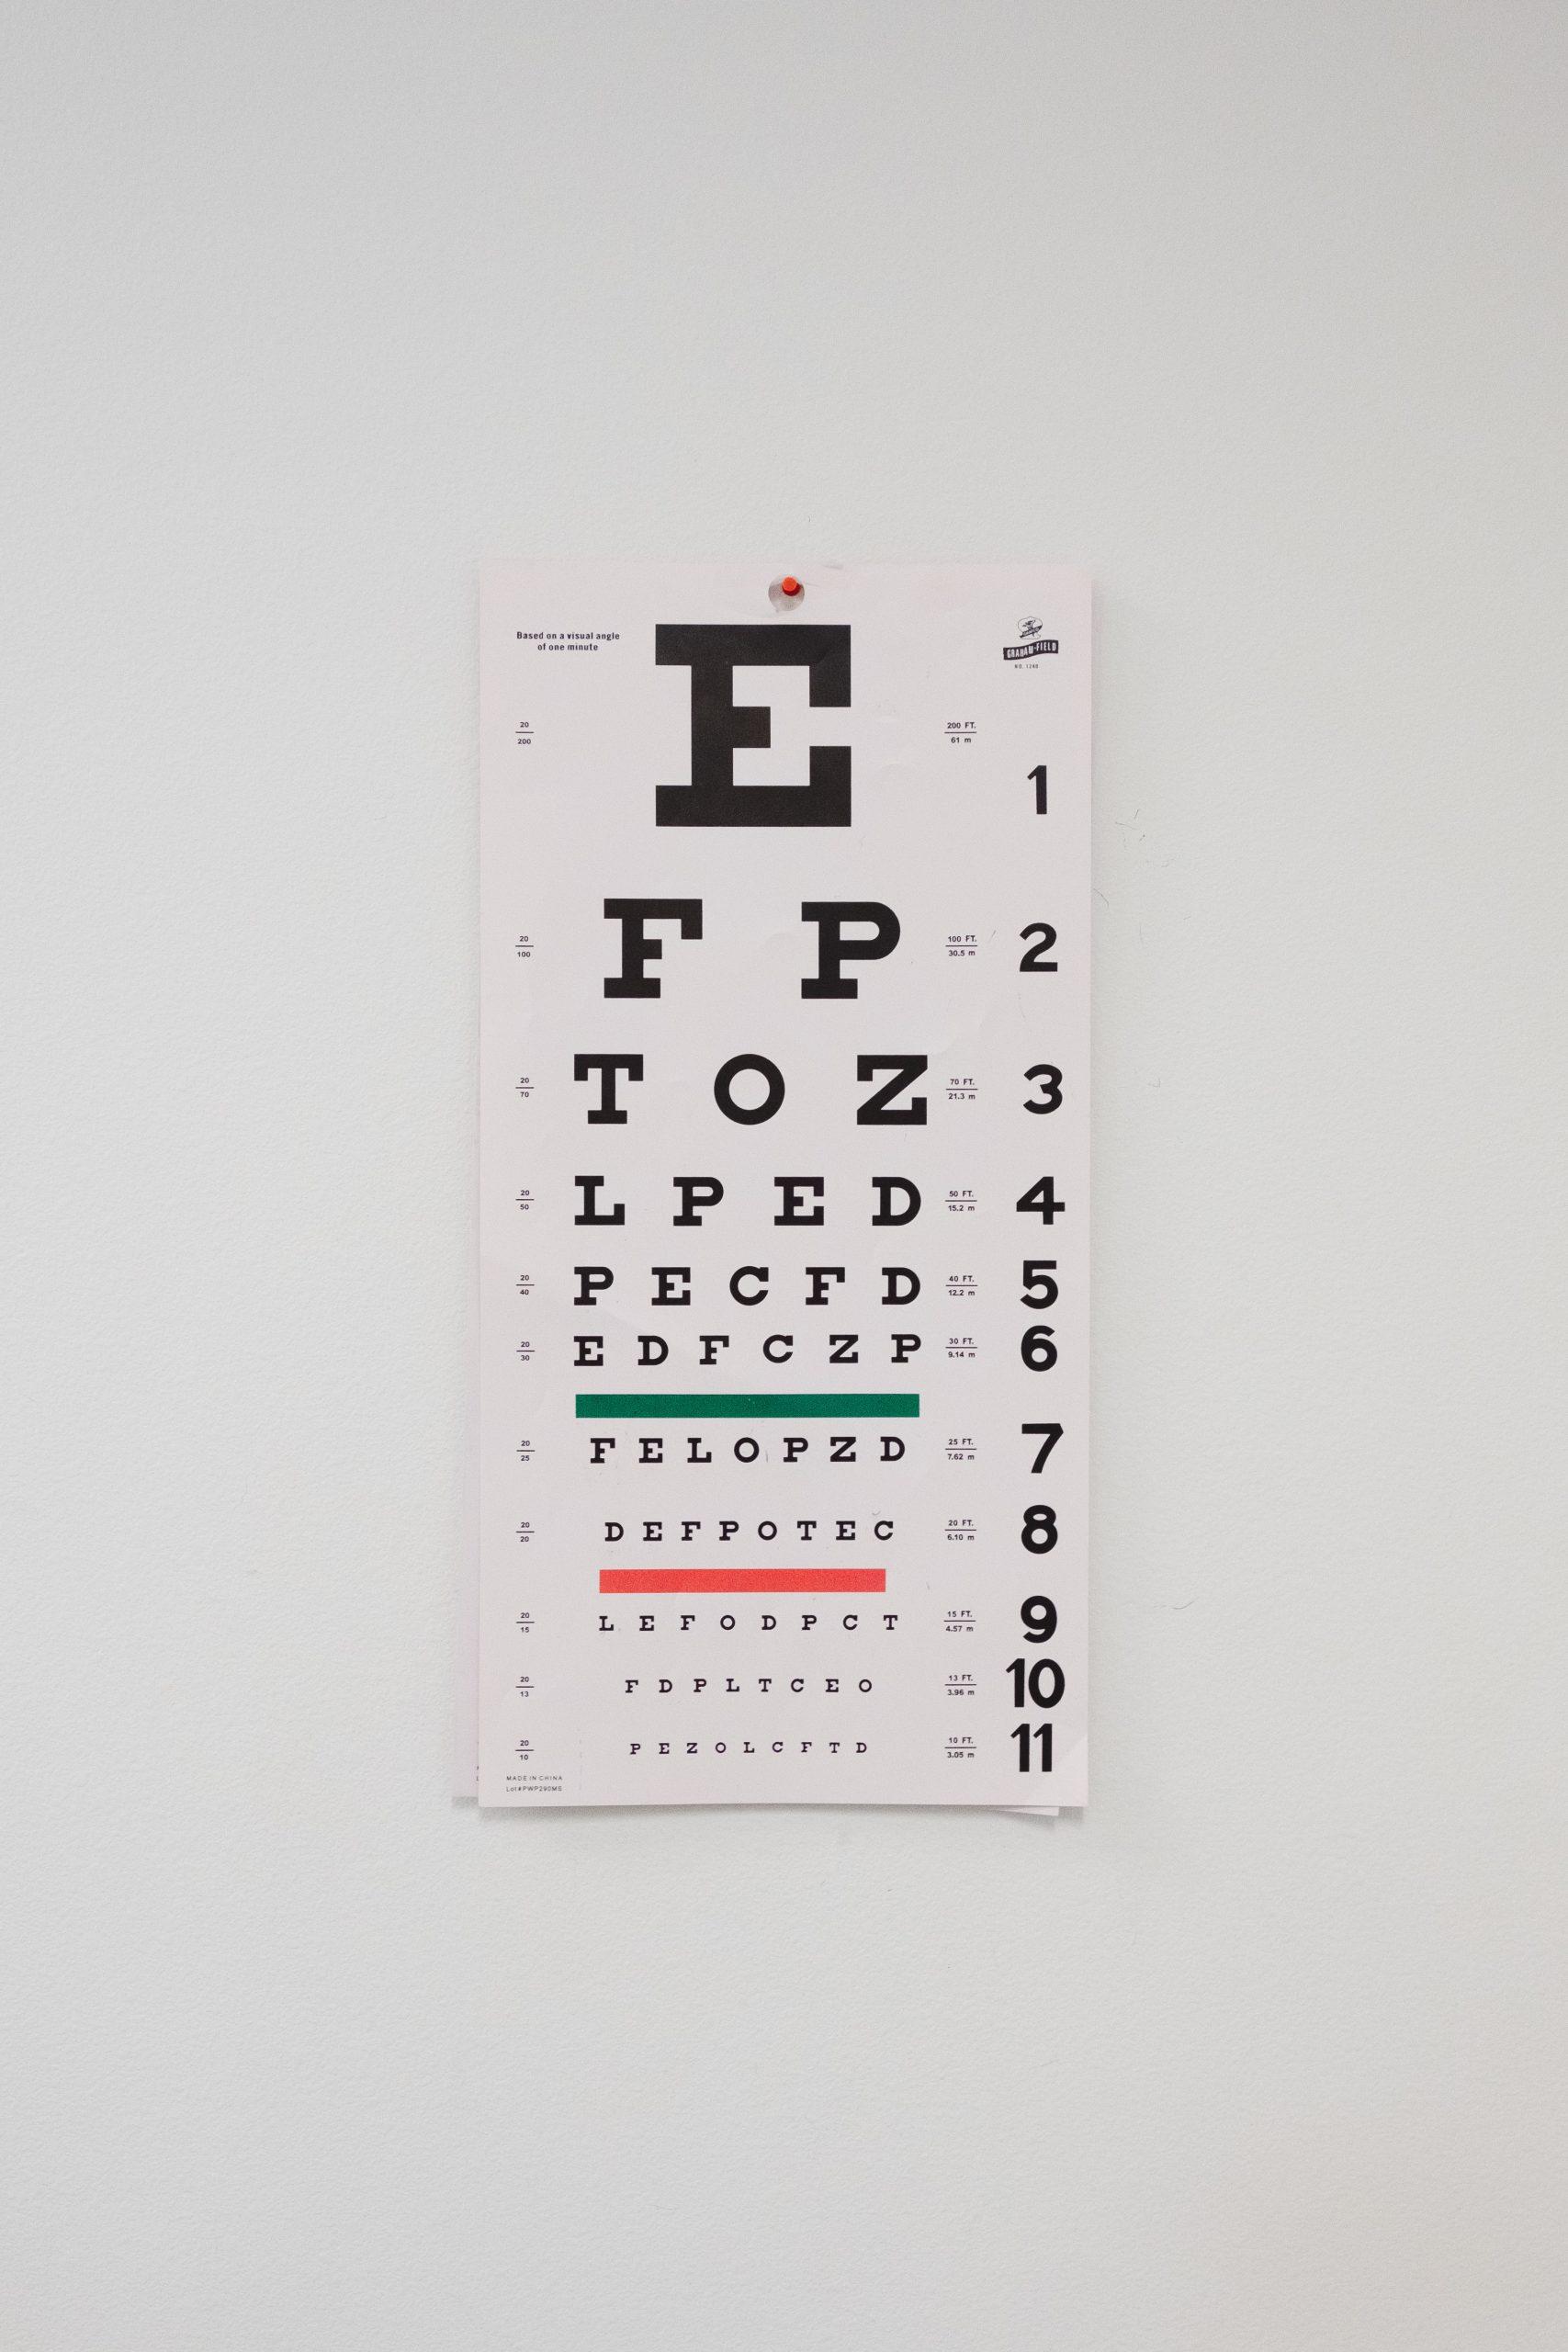 Khám mắt toàn diện là cách tuyệt vời để mọi người chăm sóc sức khỏe mắt. (Nguồn: Internet)